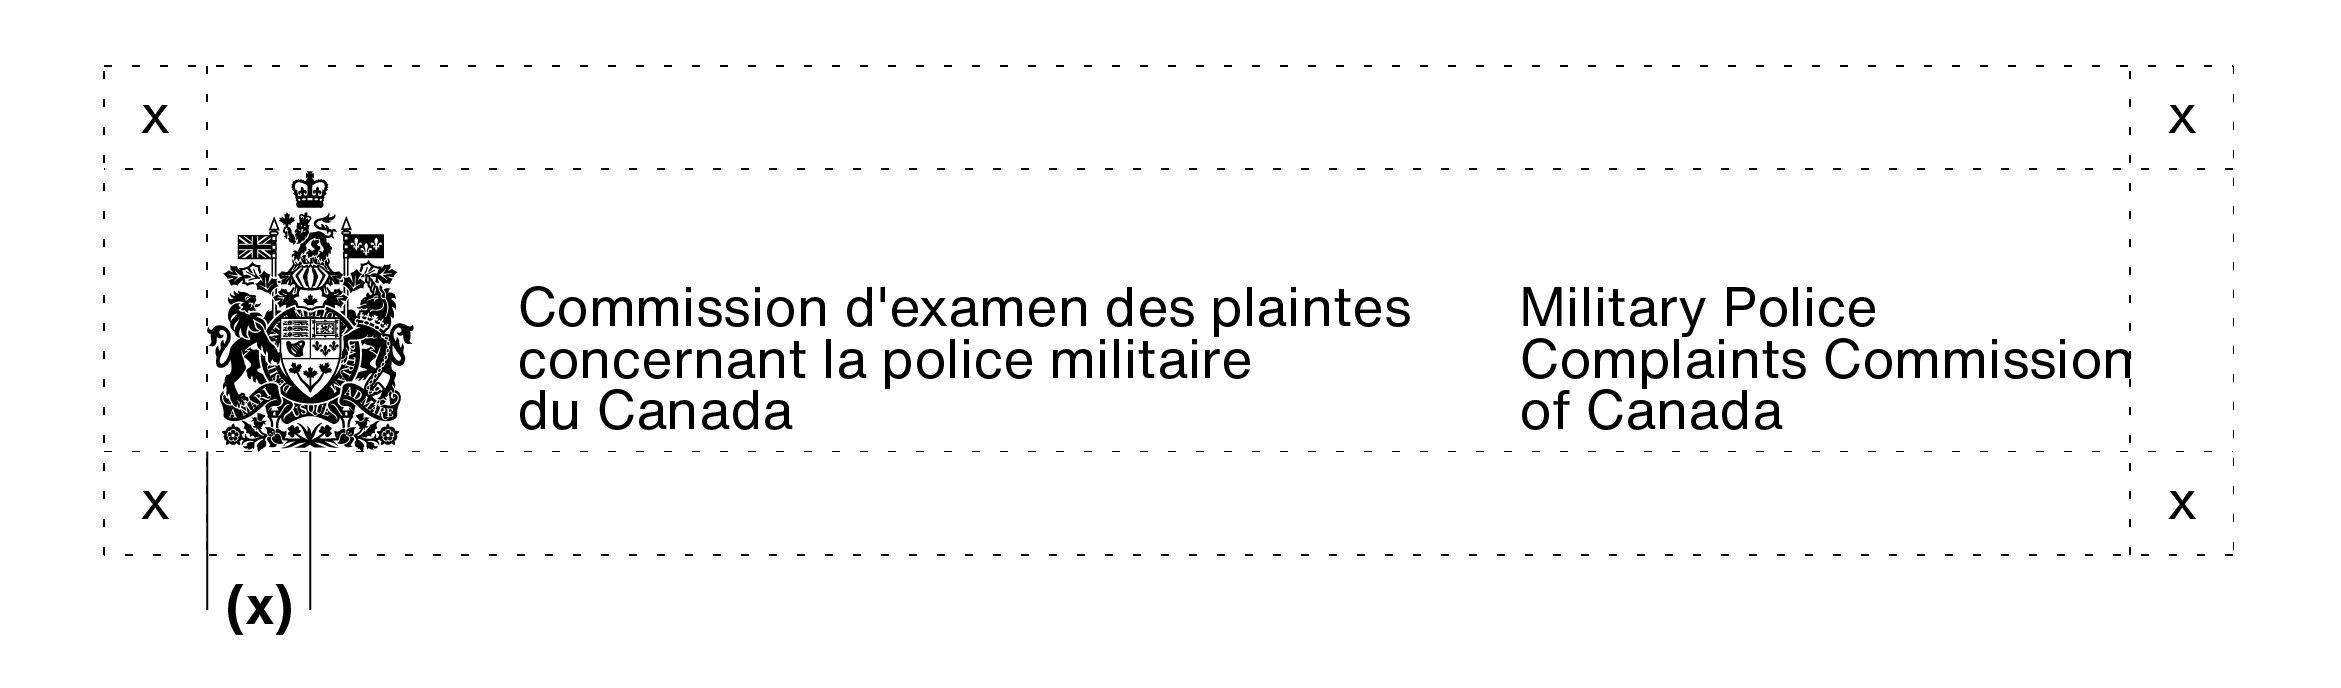 Signature avec armoiries de la Commission d’examen des plaintes concernant la police militaire du Canada (sur 3 lignes). L’espace libre à laisser autour d’une signature avec armoiries est expliqué dans le texte ci-dessus.